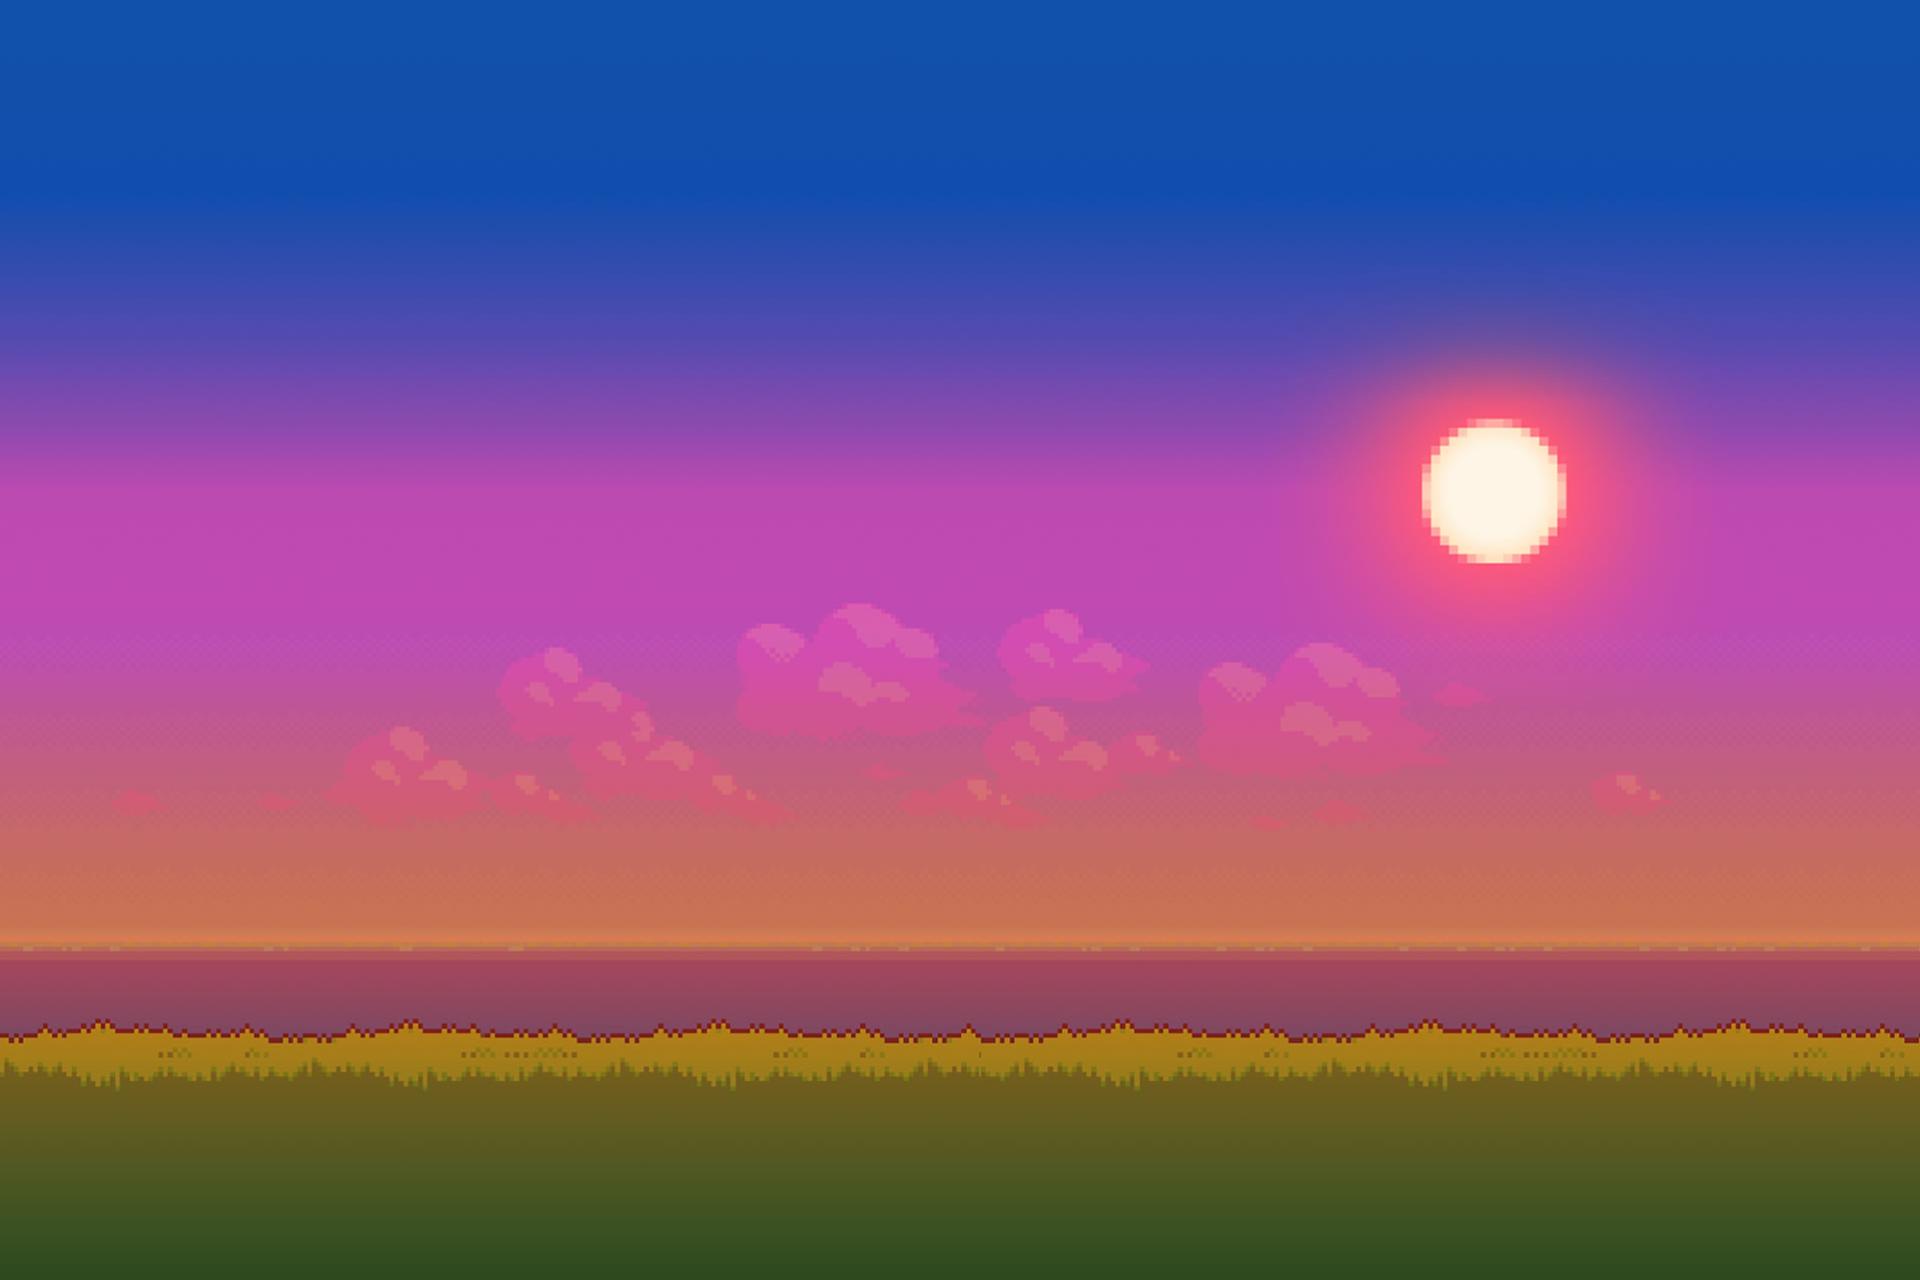 8 Bit Sunset - HD Wallpaper 